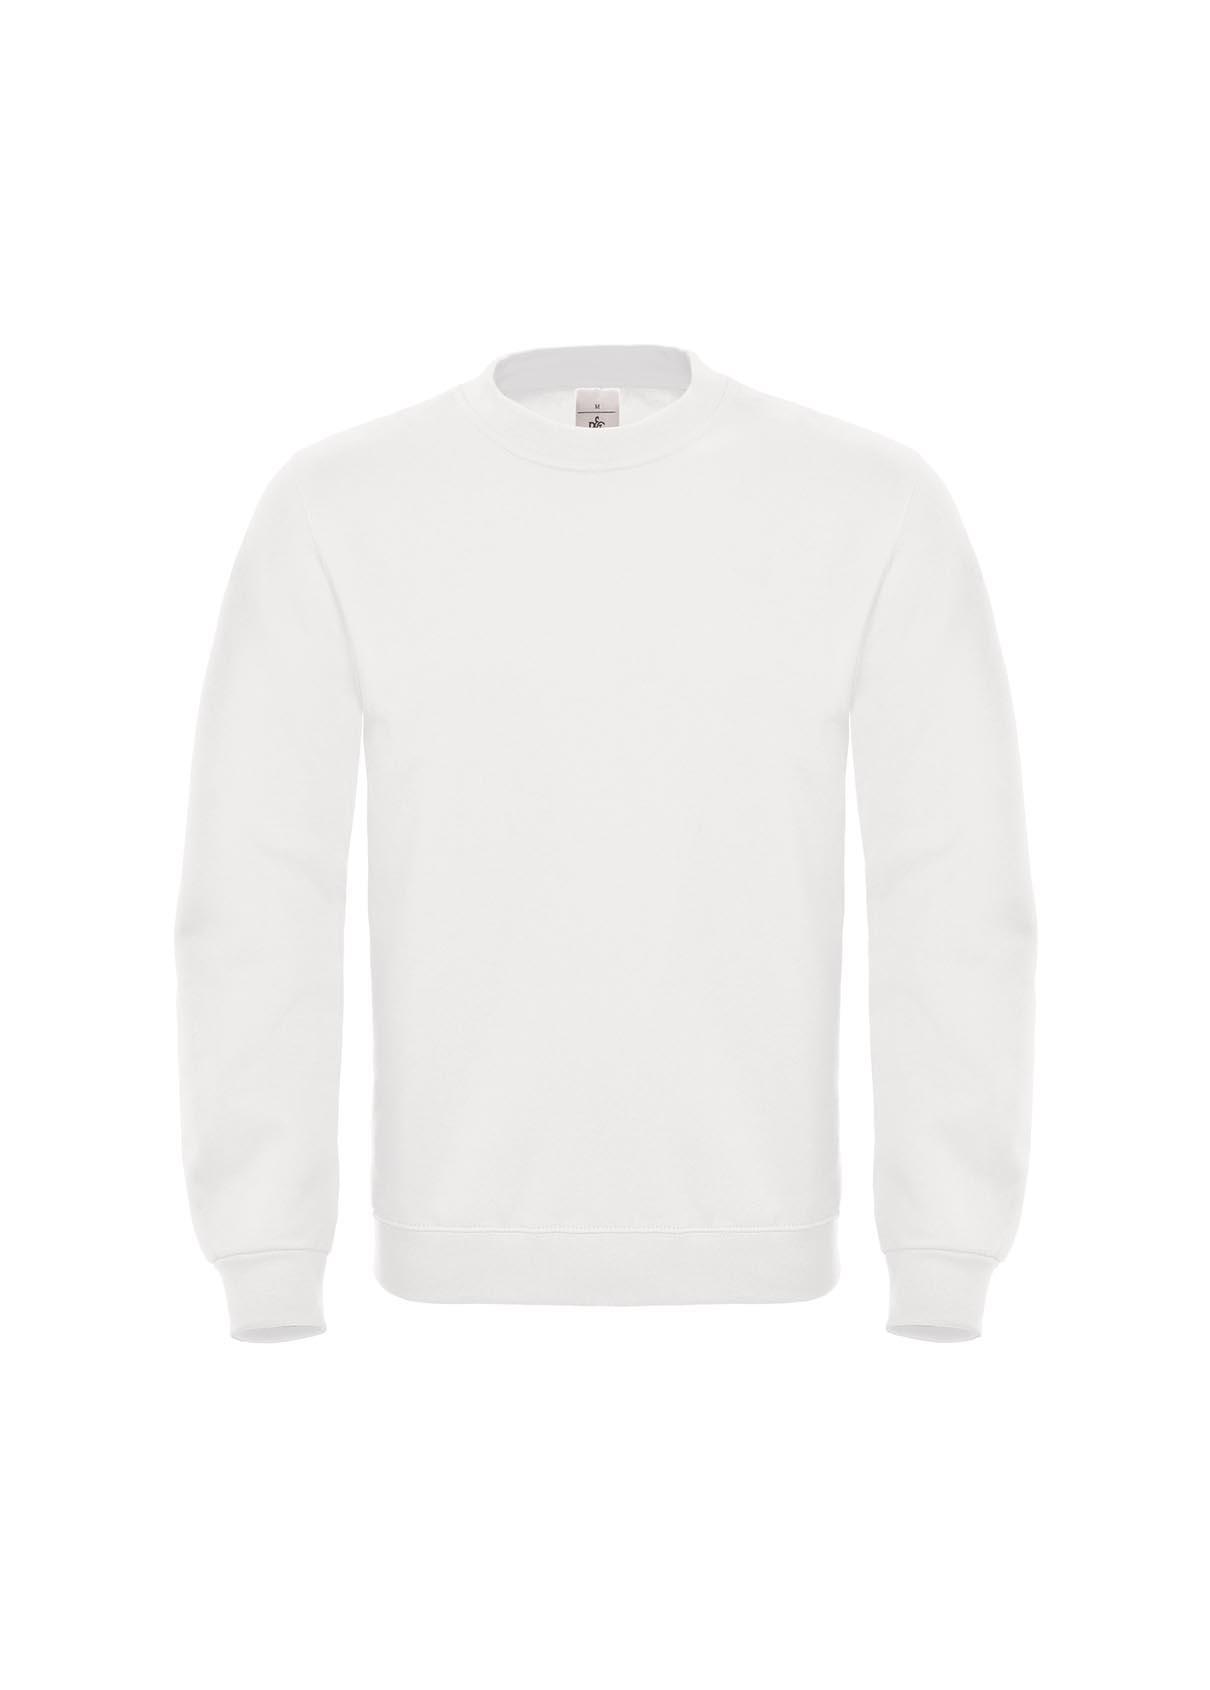 Witte Klassiek sweatshirt heren unisex bedrukbaar